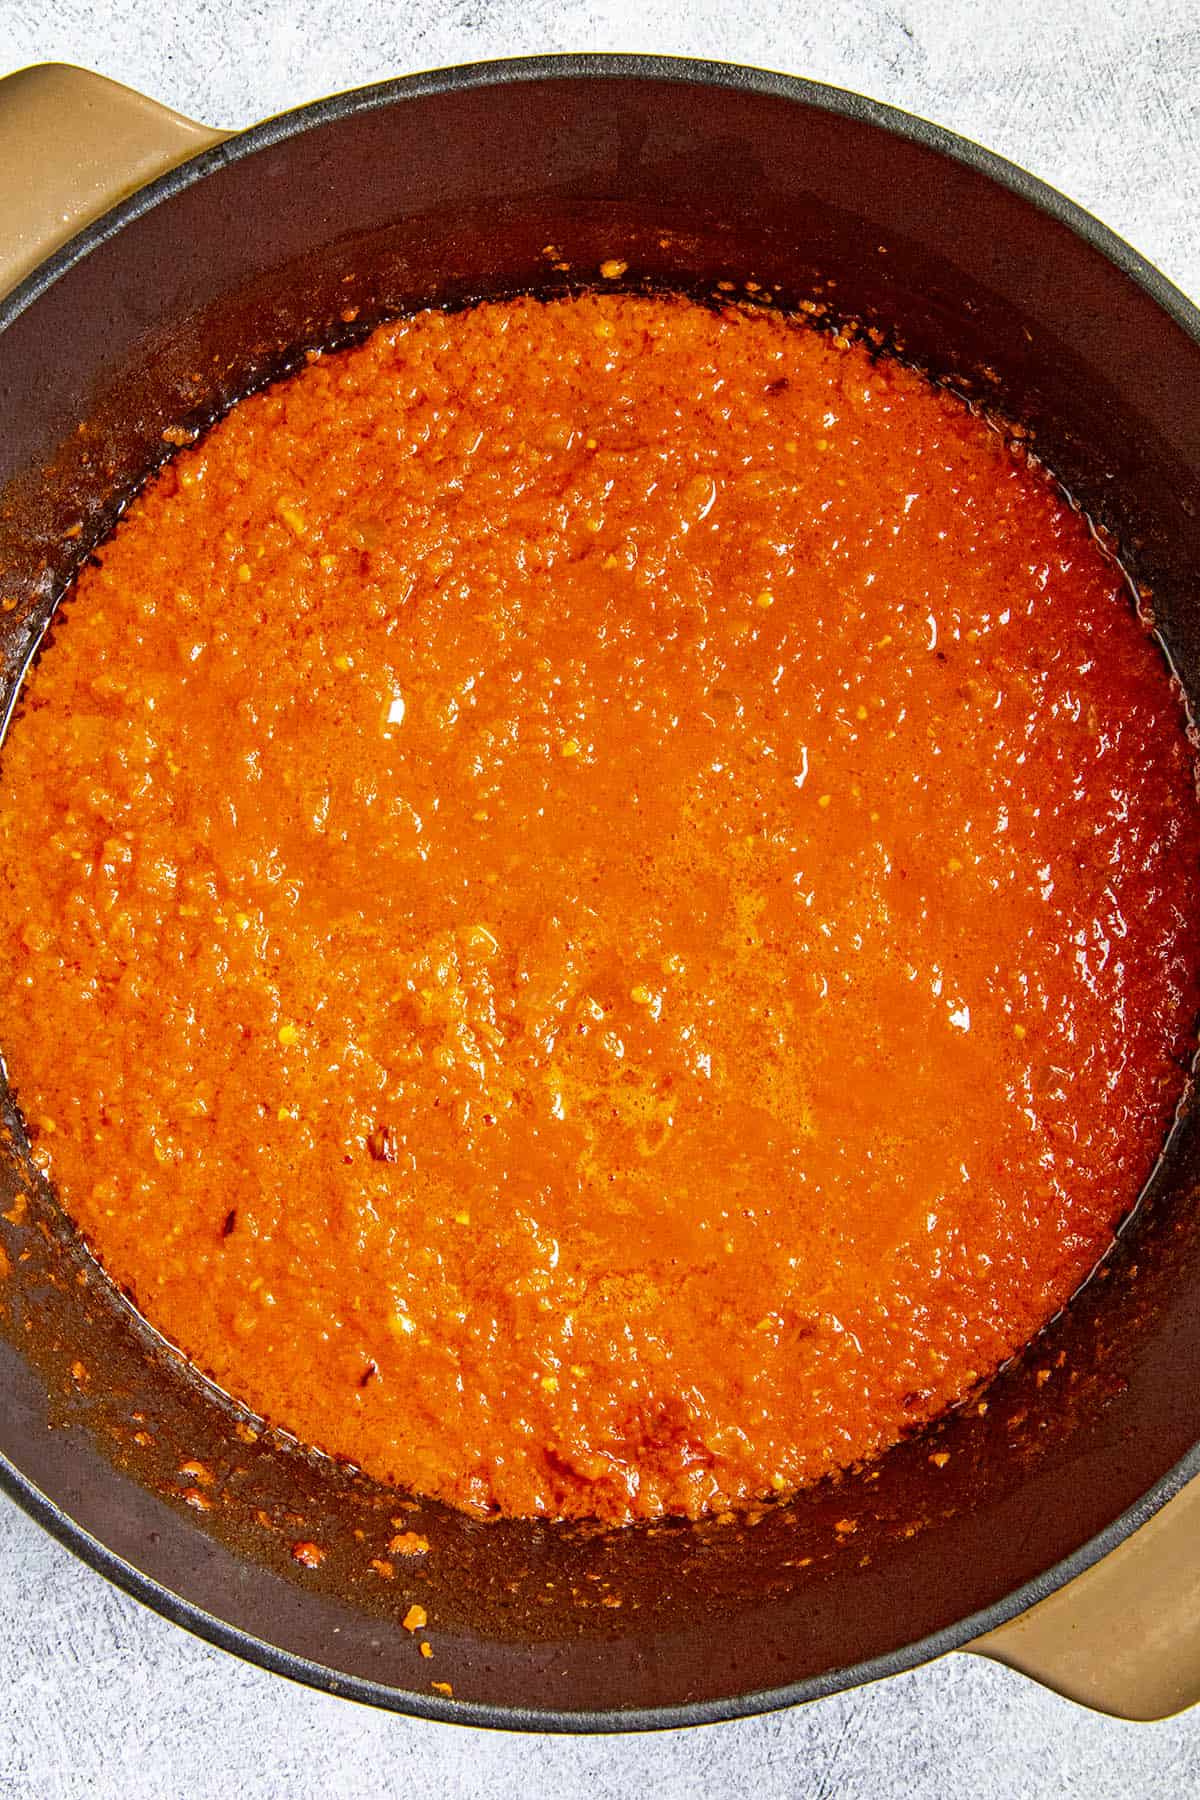 The tomato-pepper puree in the pot